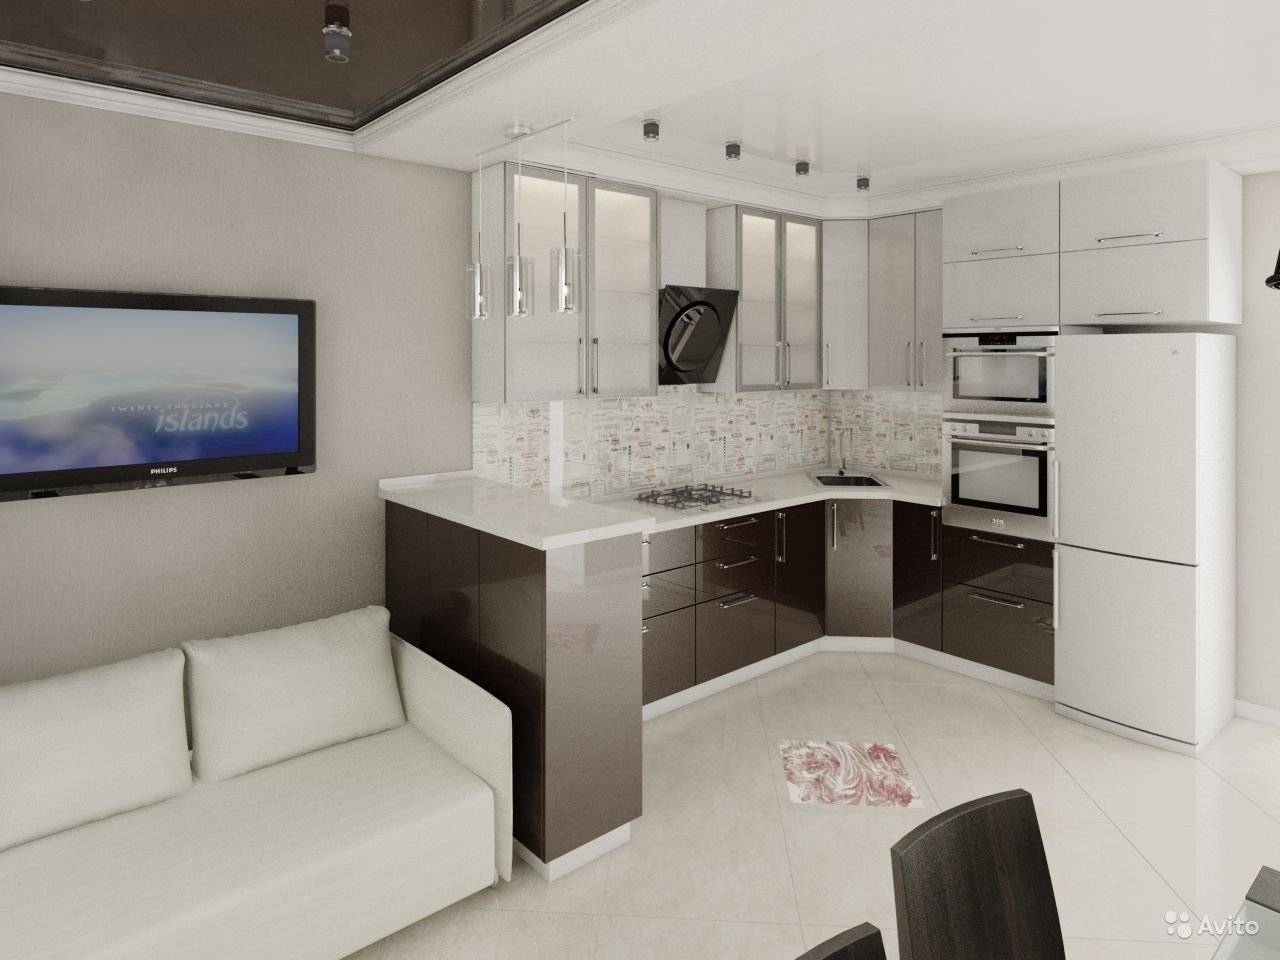 75 дизайнерских решений интерьера кухни гостиной 16 кв.м. с фото